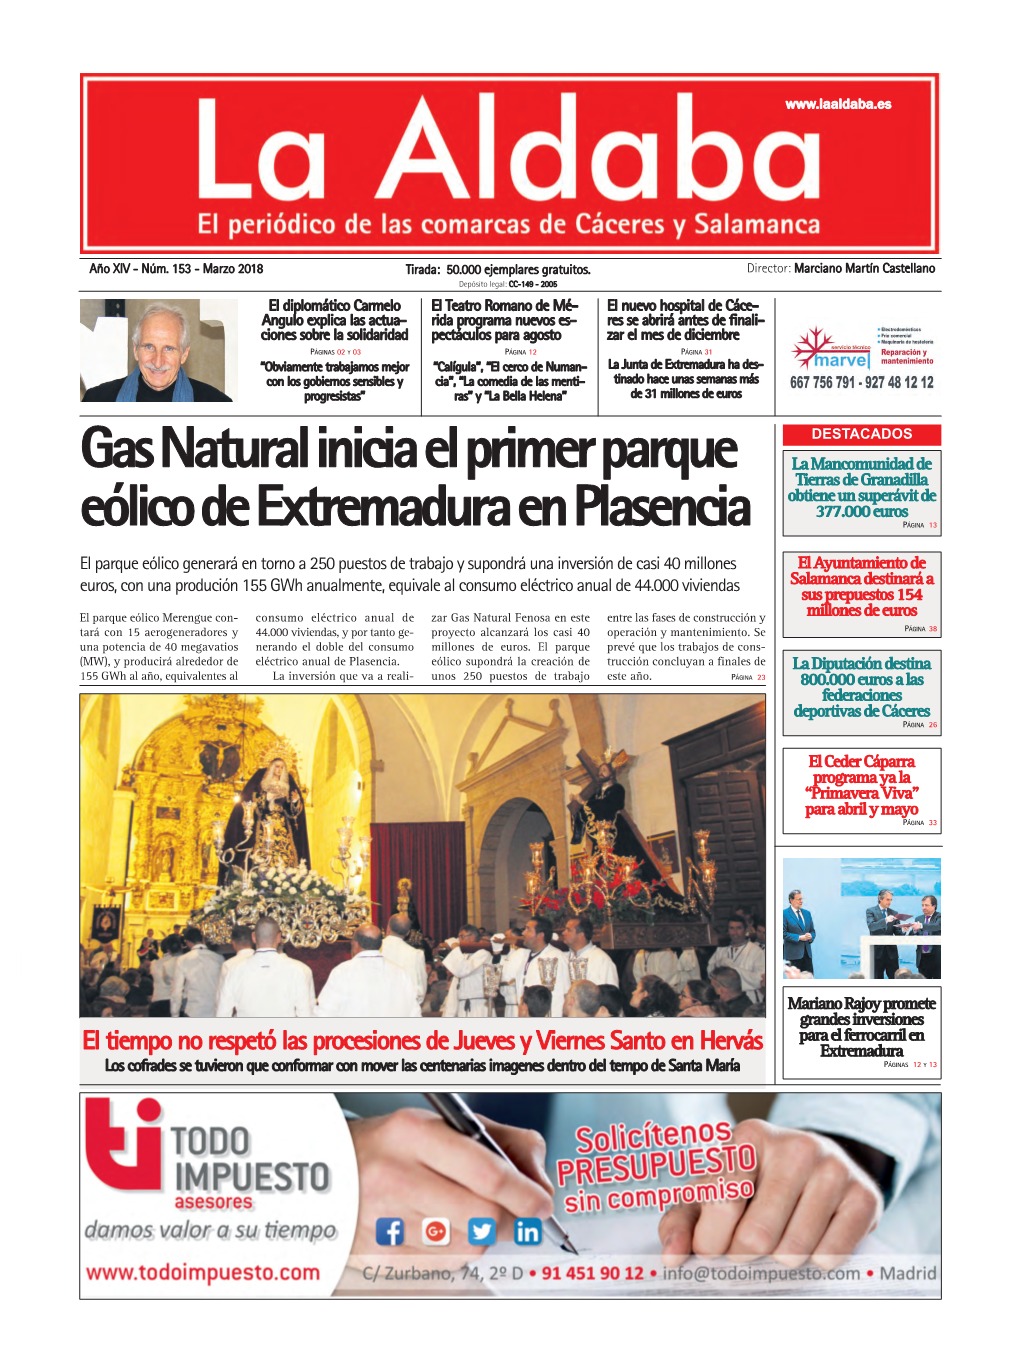 Gas Natural Inicia El Primer Parque Eólico De Extremadura En Plasencia